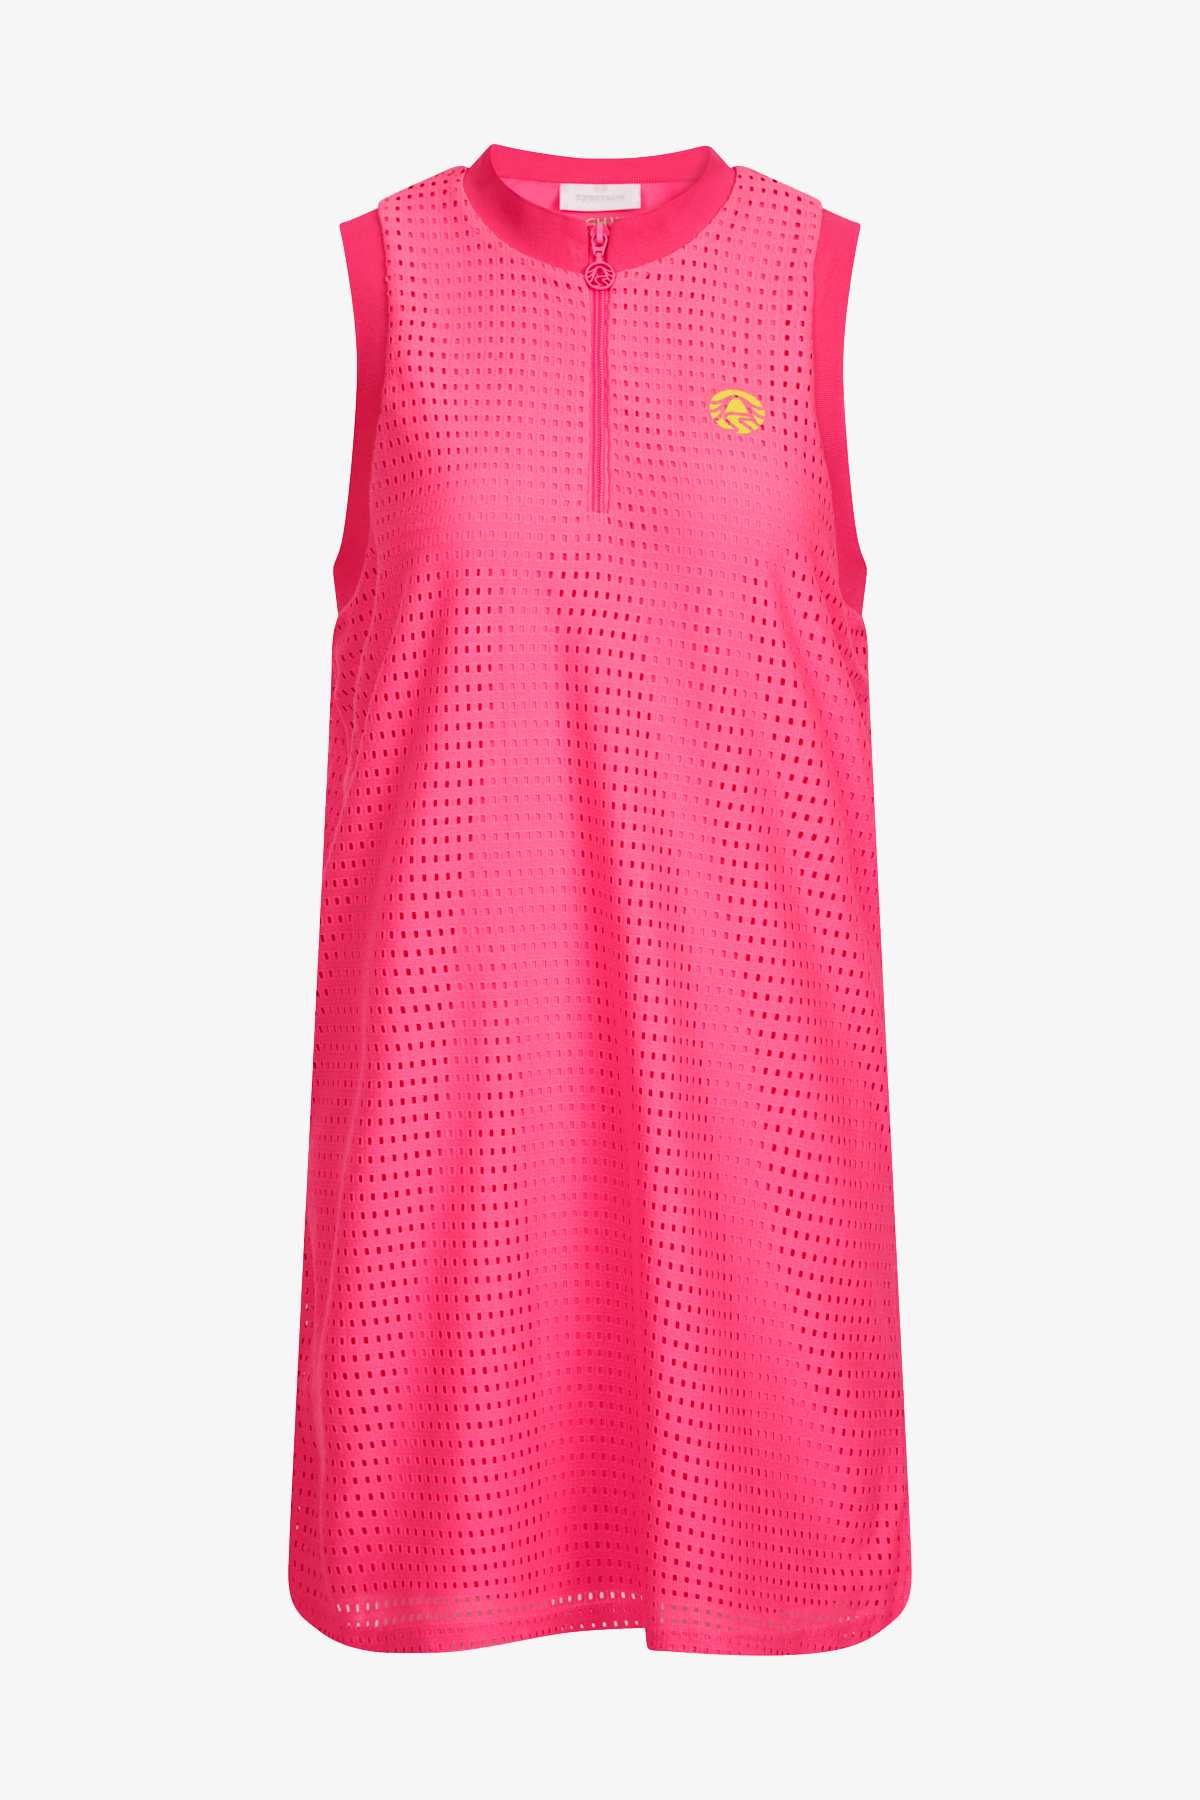 Sportalm šaty Dolly candy pink Velikost: 36